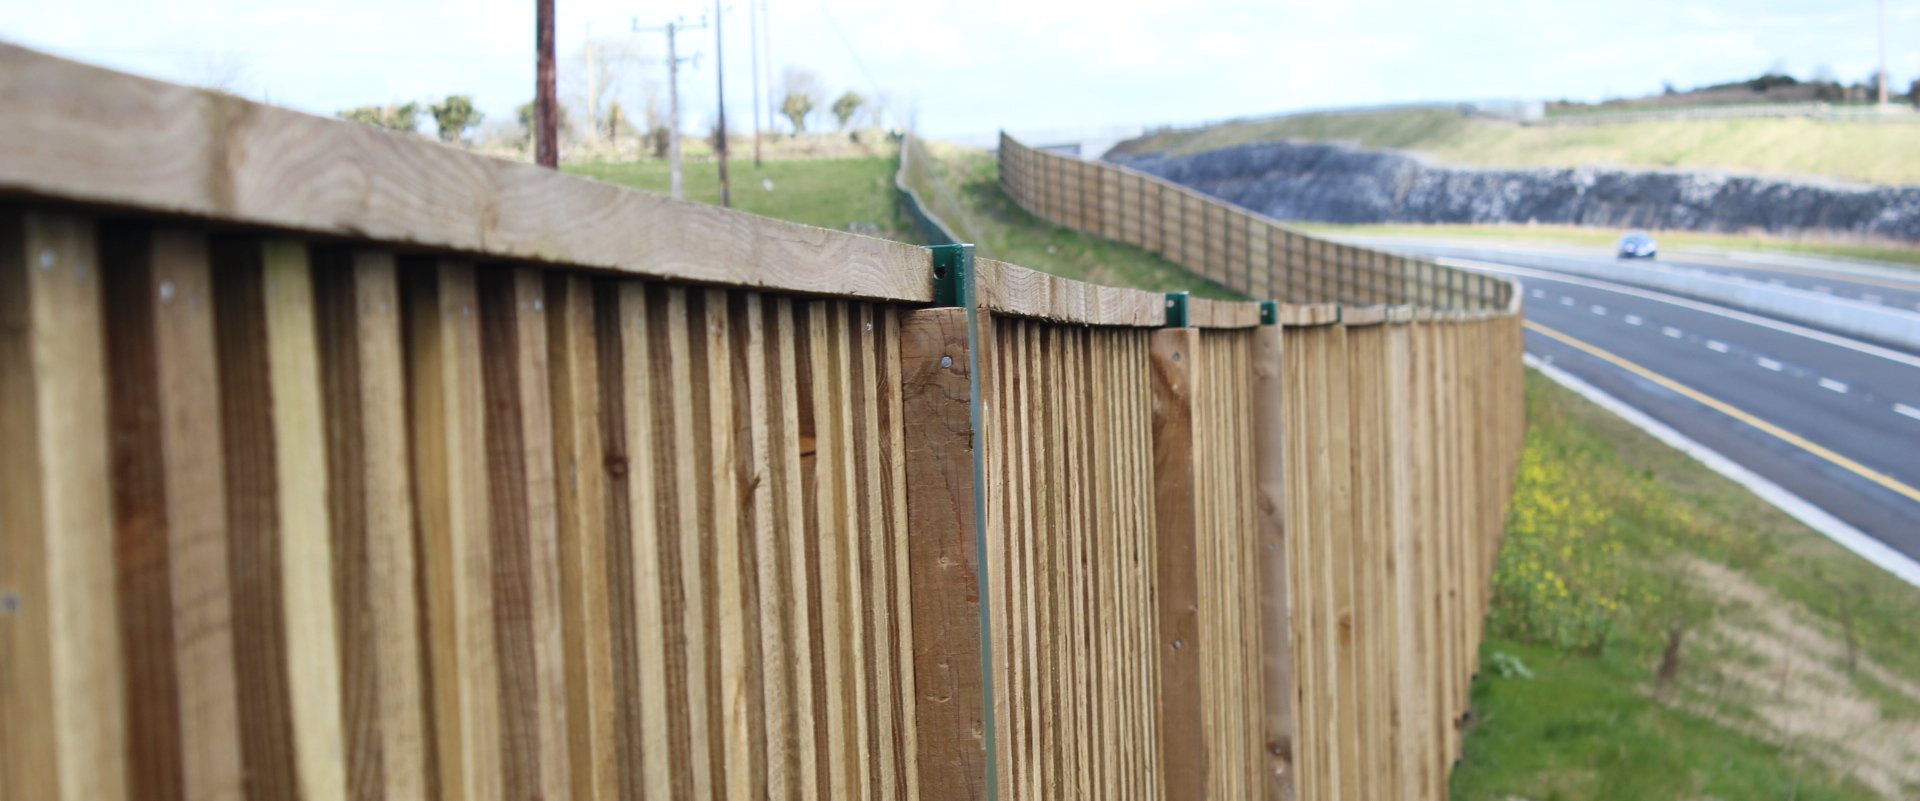 Acoustic Fence Noise Barrier M17 M18